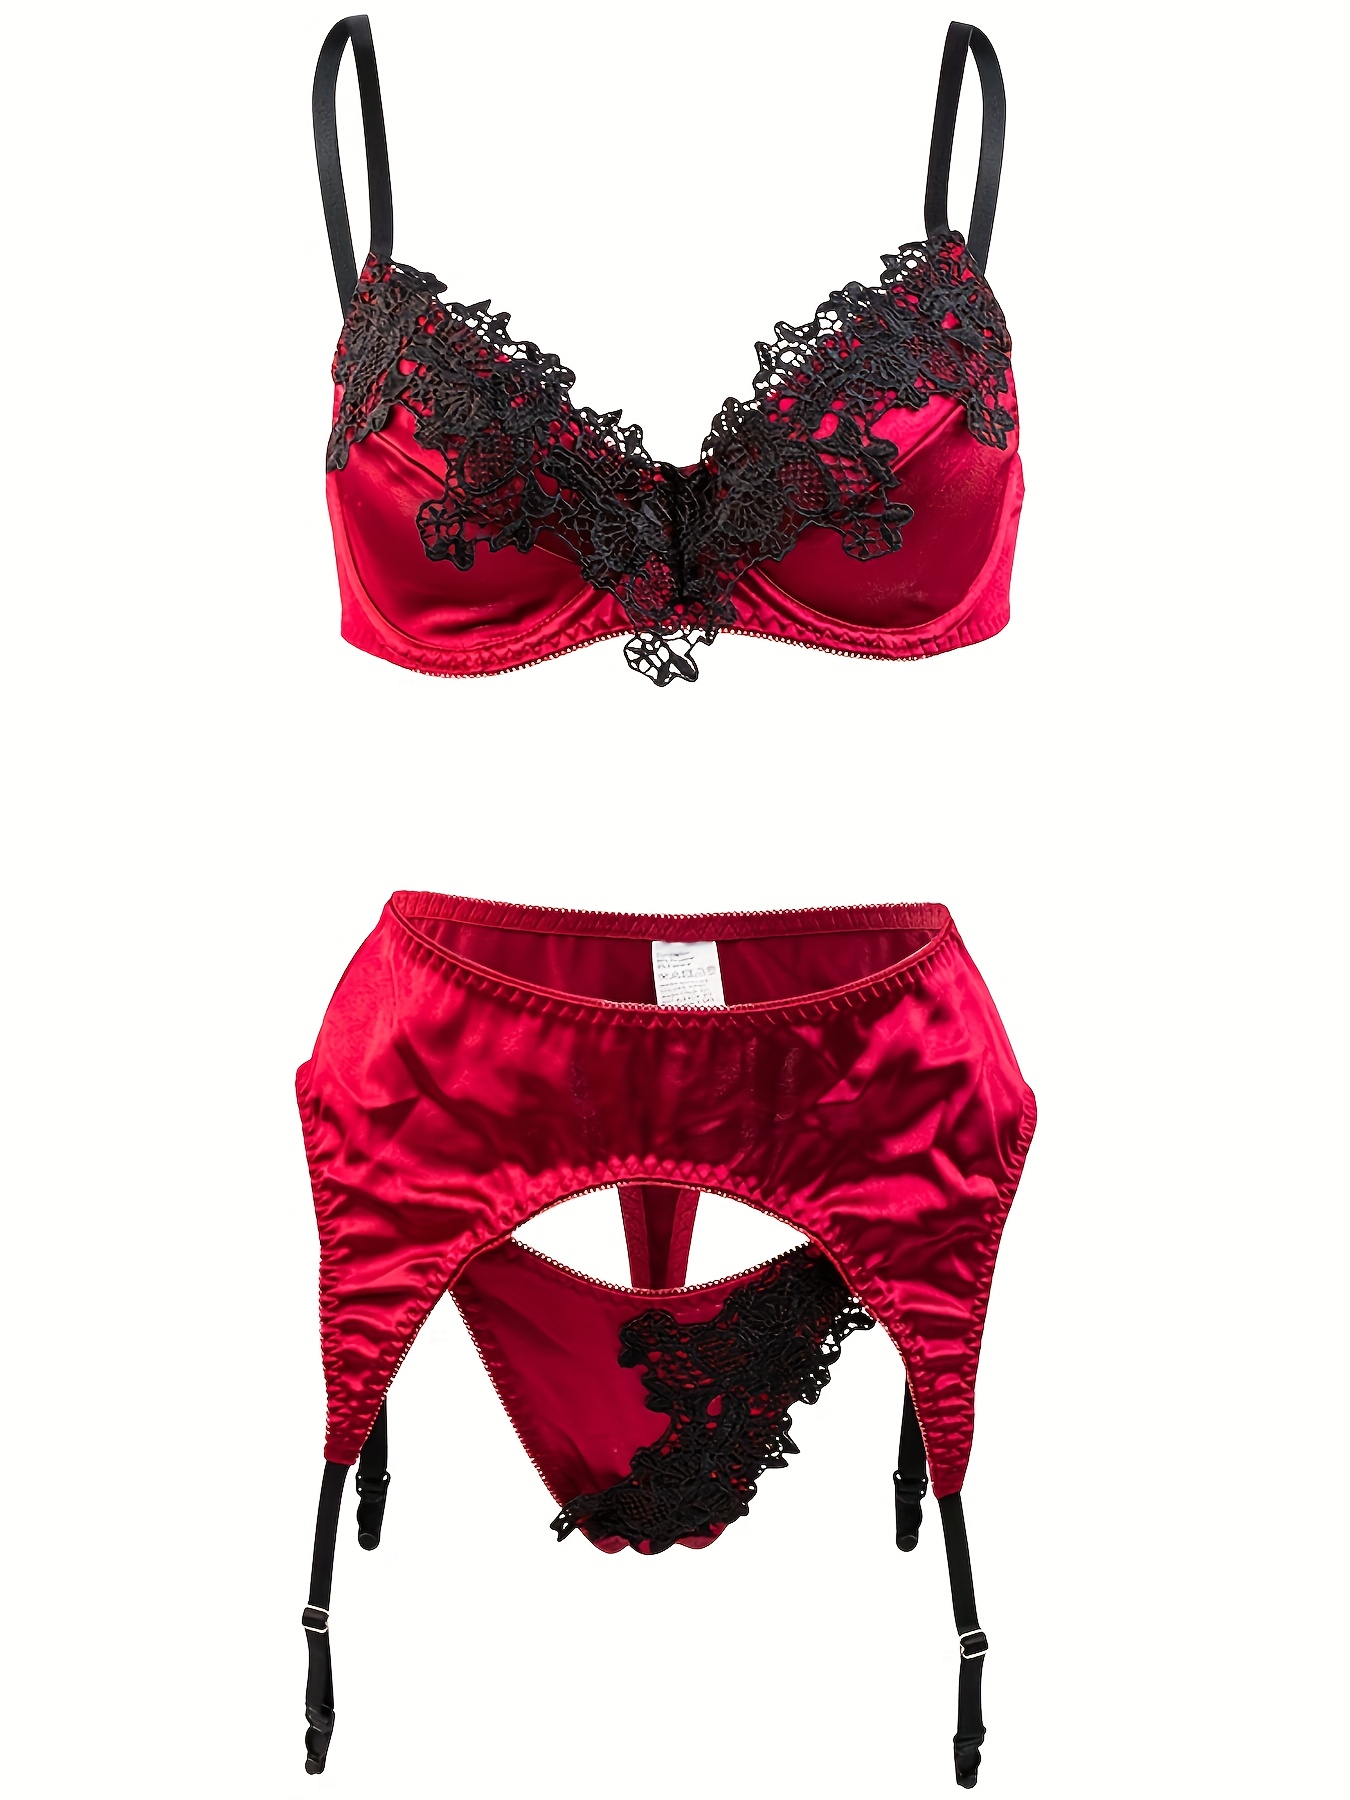 Contrast Lace Bra & Panties, Colorblock Push Up Bra & Thong Panties  Lingerie Set, Women's Lingerie & Underwear